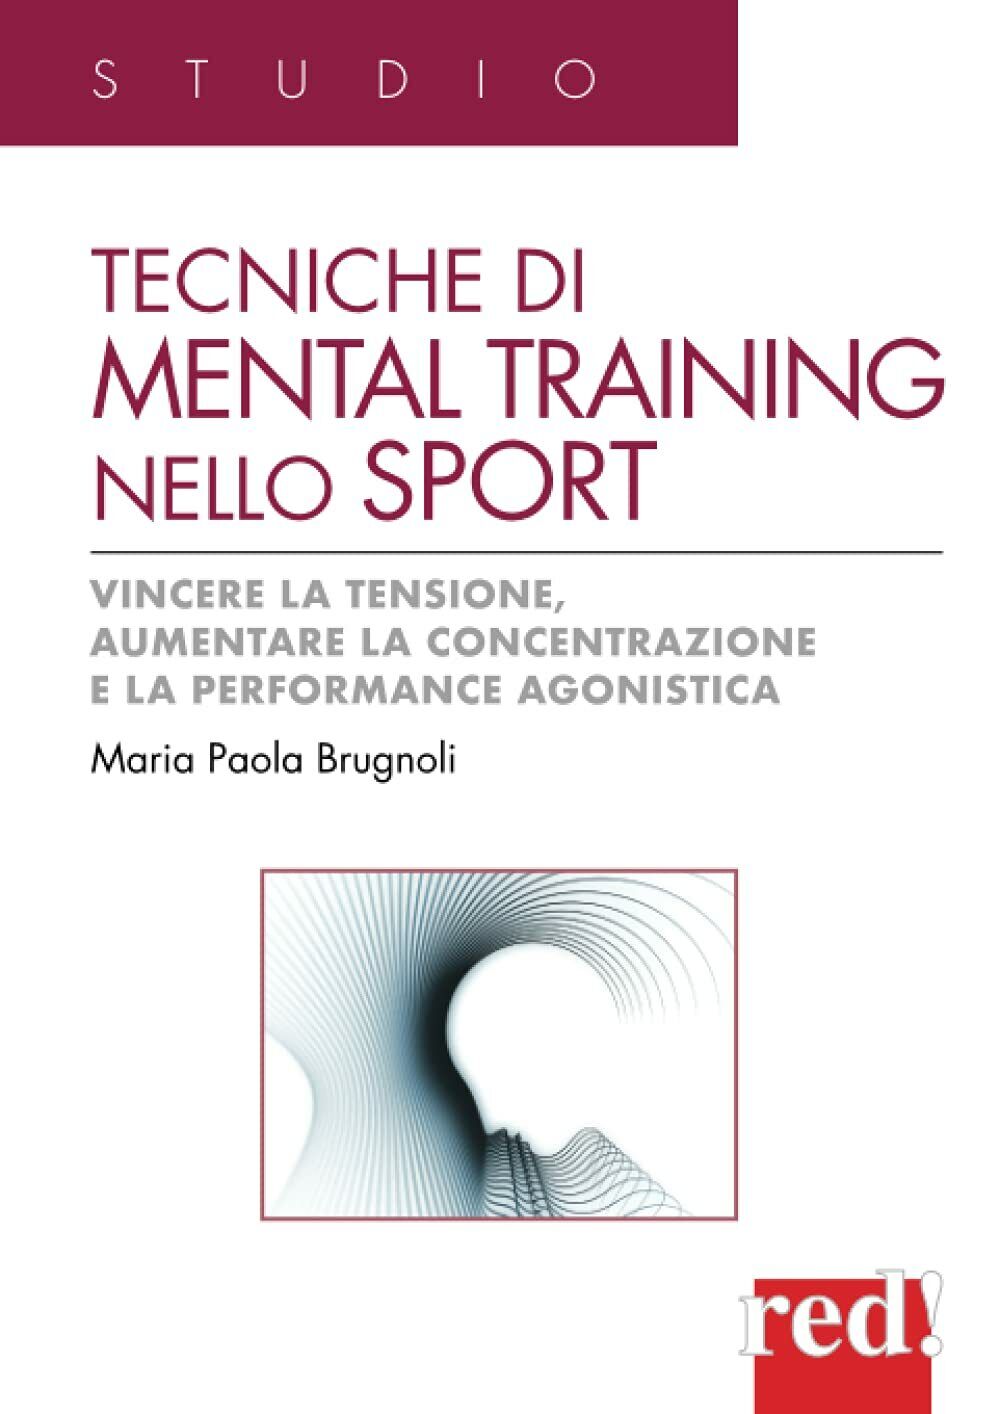 Tecniche di mental training nello sport-Maria Paola Brugnoli-Red Edizioni, 2012